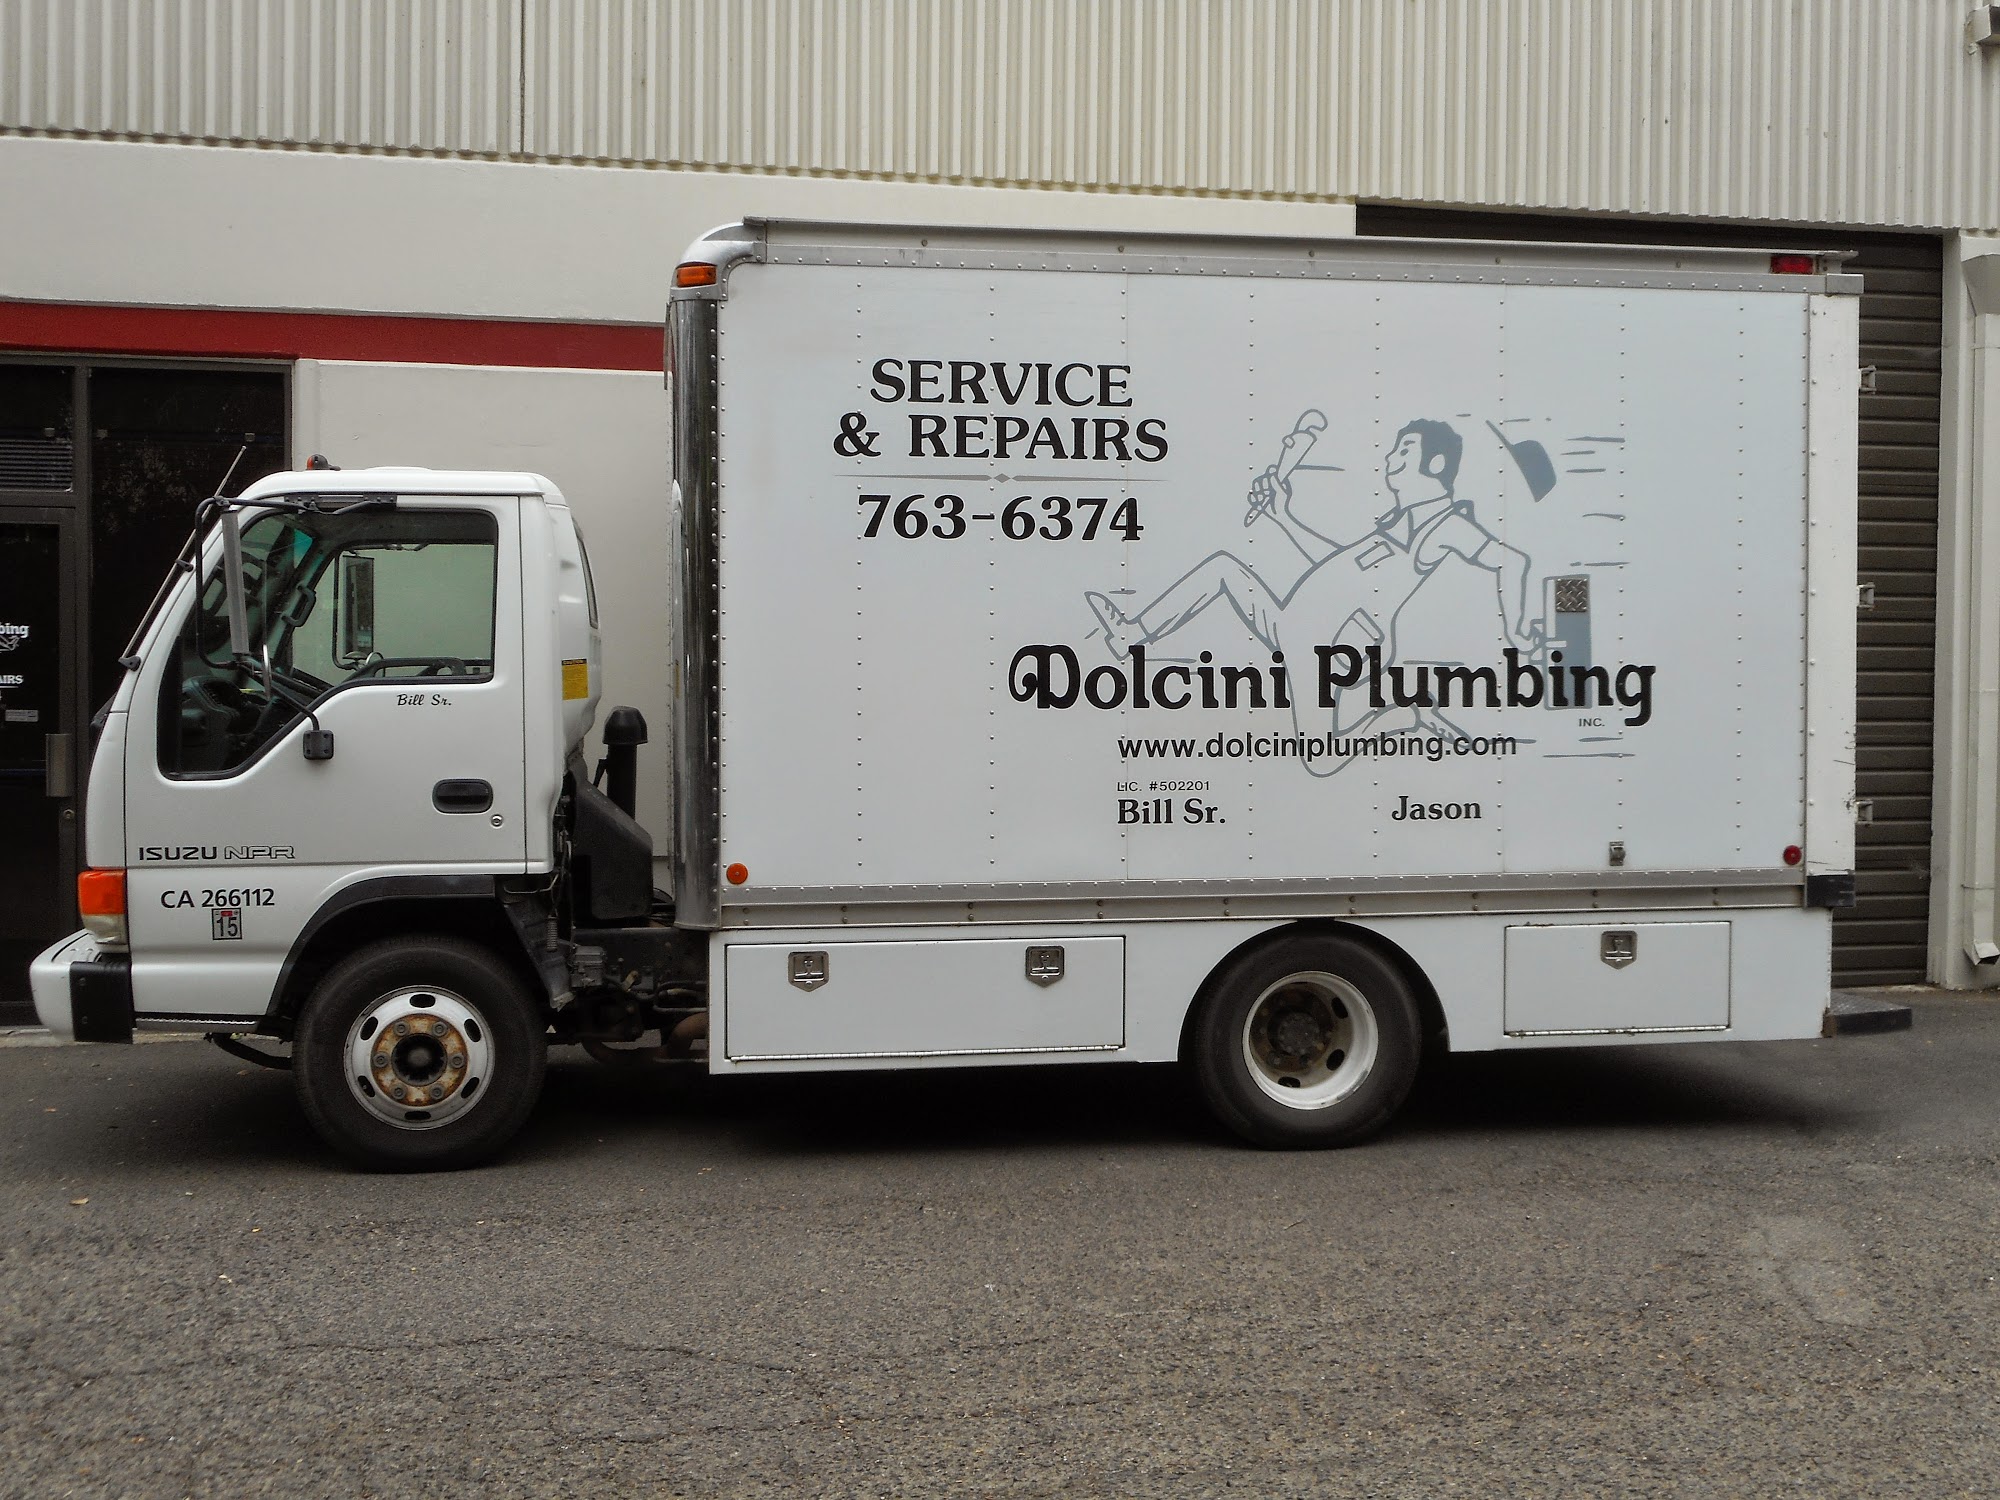 Dolcini Plumbing Inc